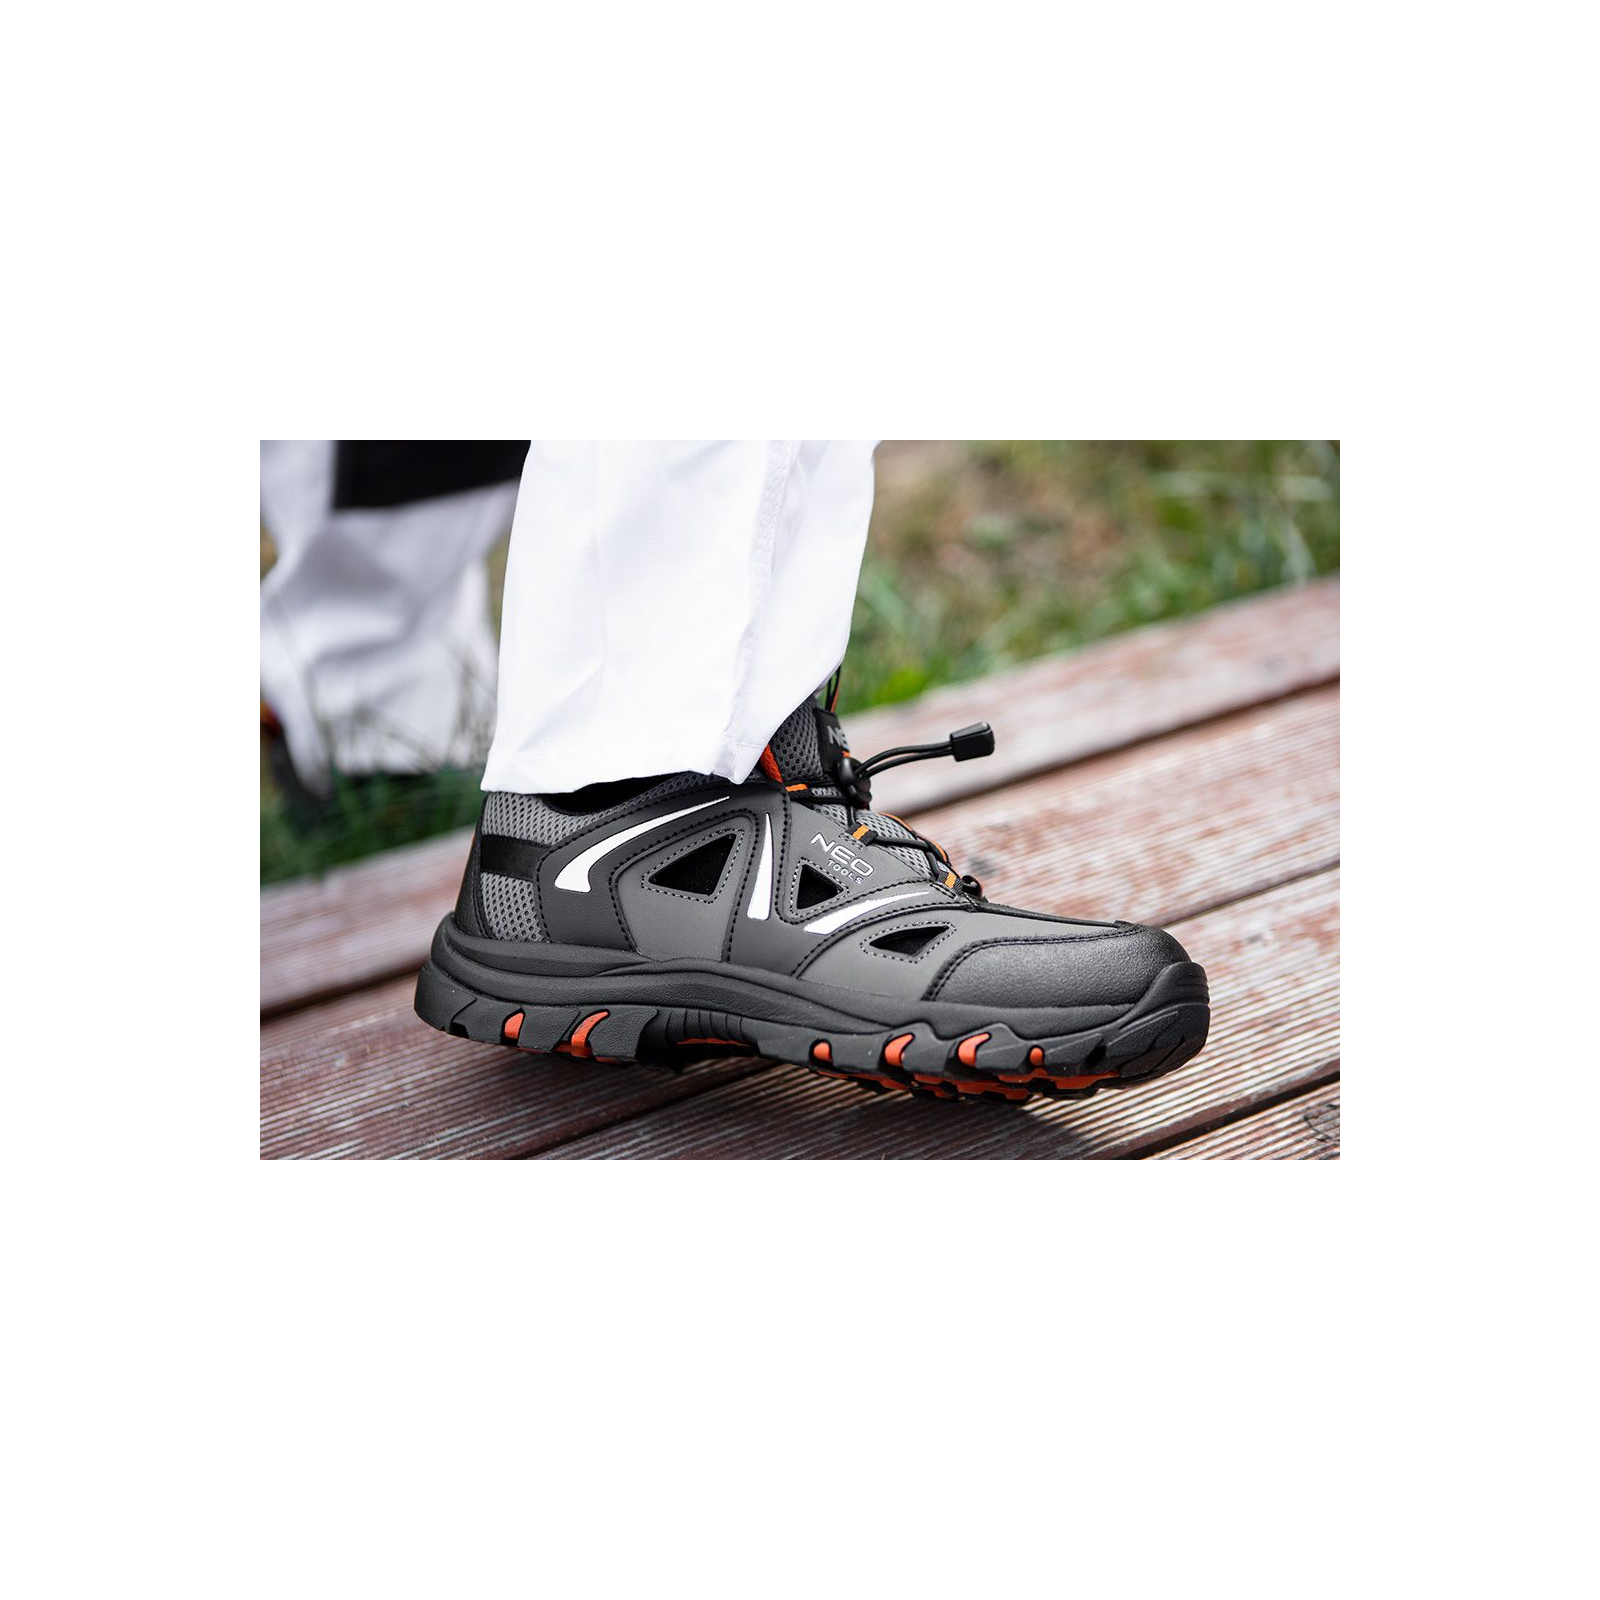 Ботинки рабочие Neo Tools кроссовки дышащие, подошва EVA, класс защиты OB, SRA, р.42 (82-723) изображение 3